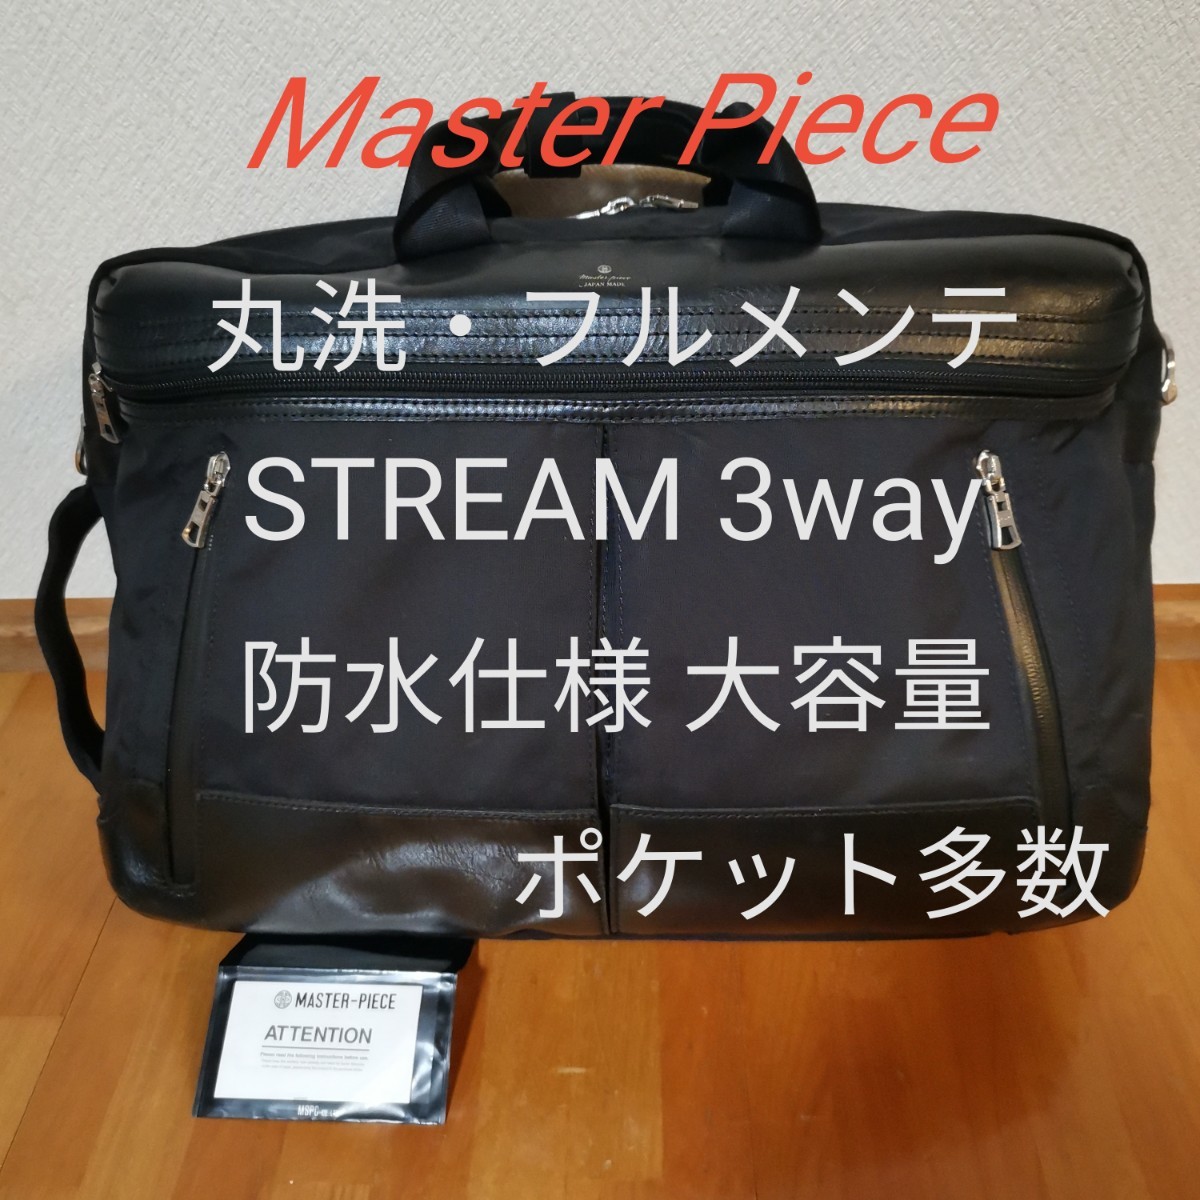 【丸洗・フルメンテ】Master Piece STREAM 3way ブラック 防水仕様 大容量 ポケット多数